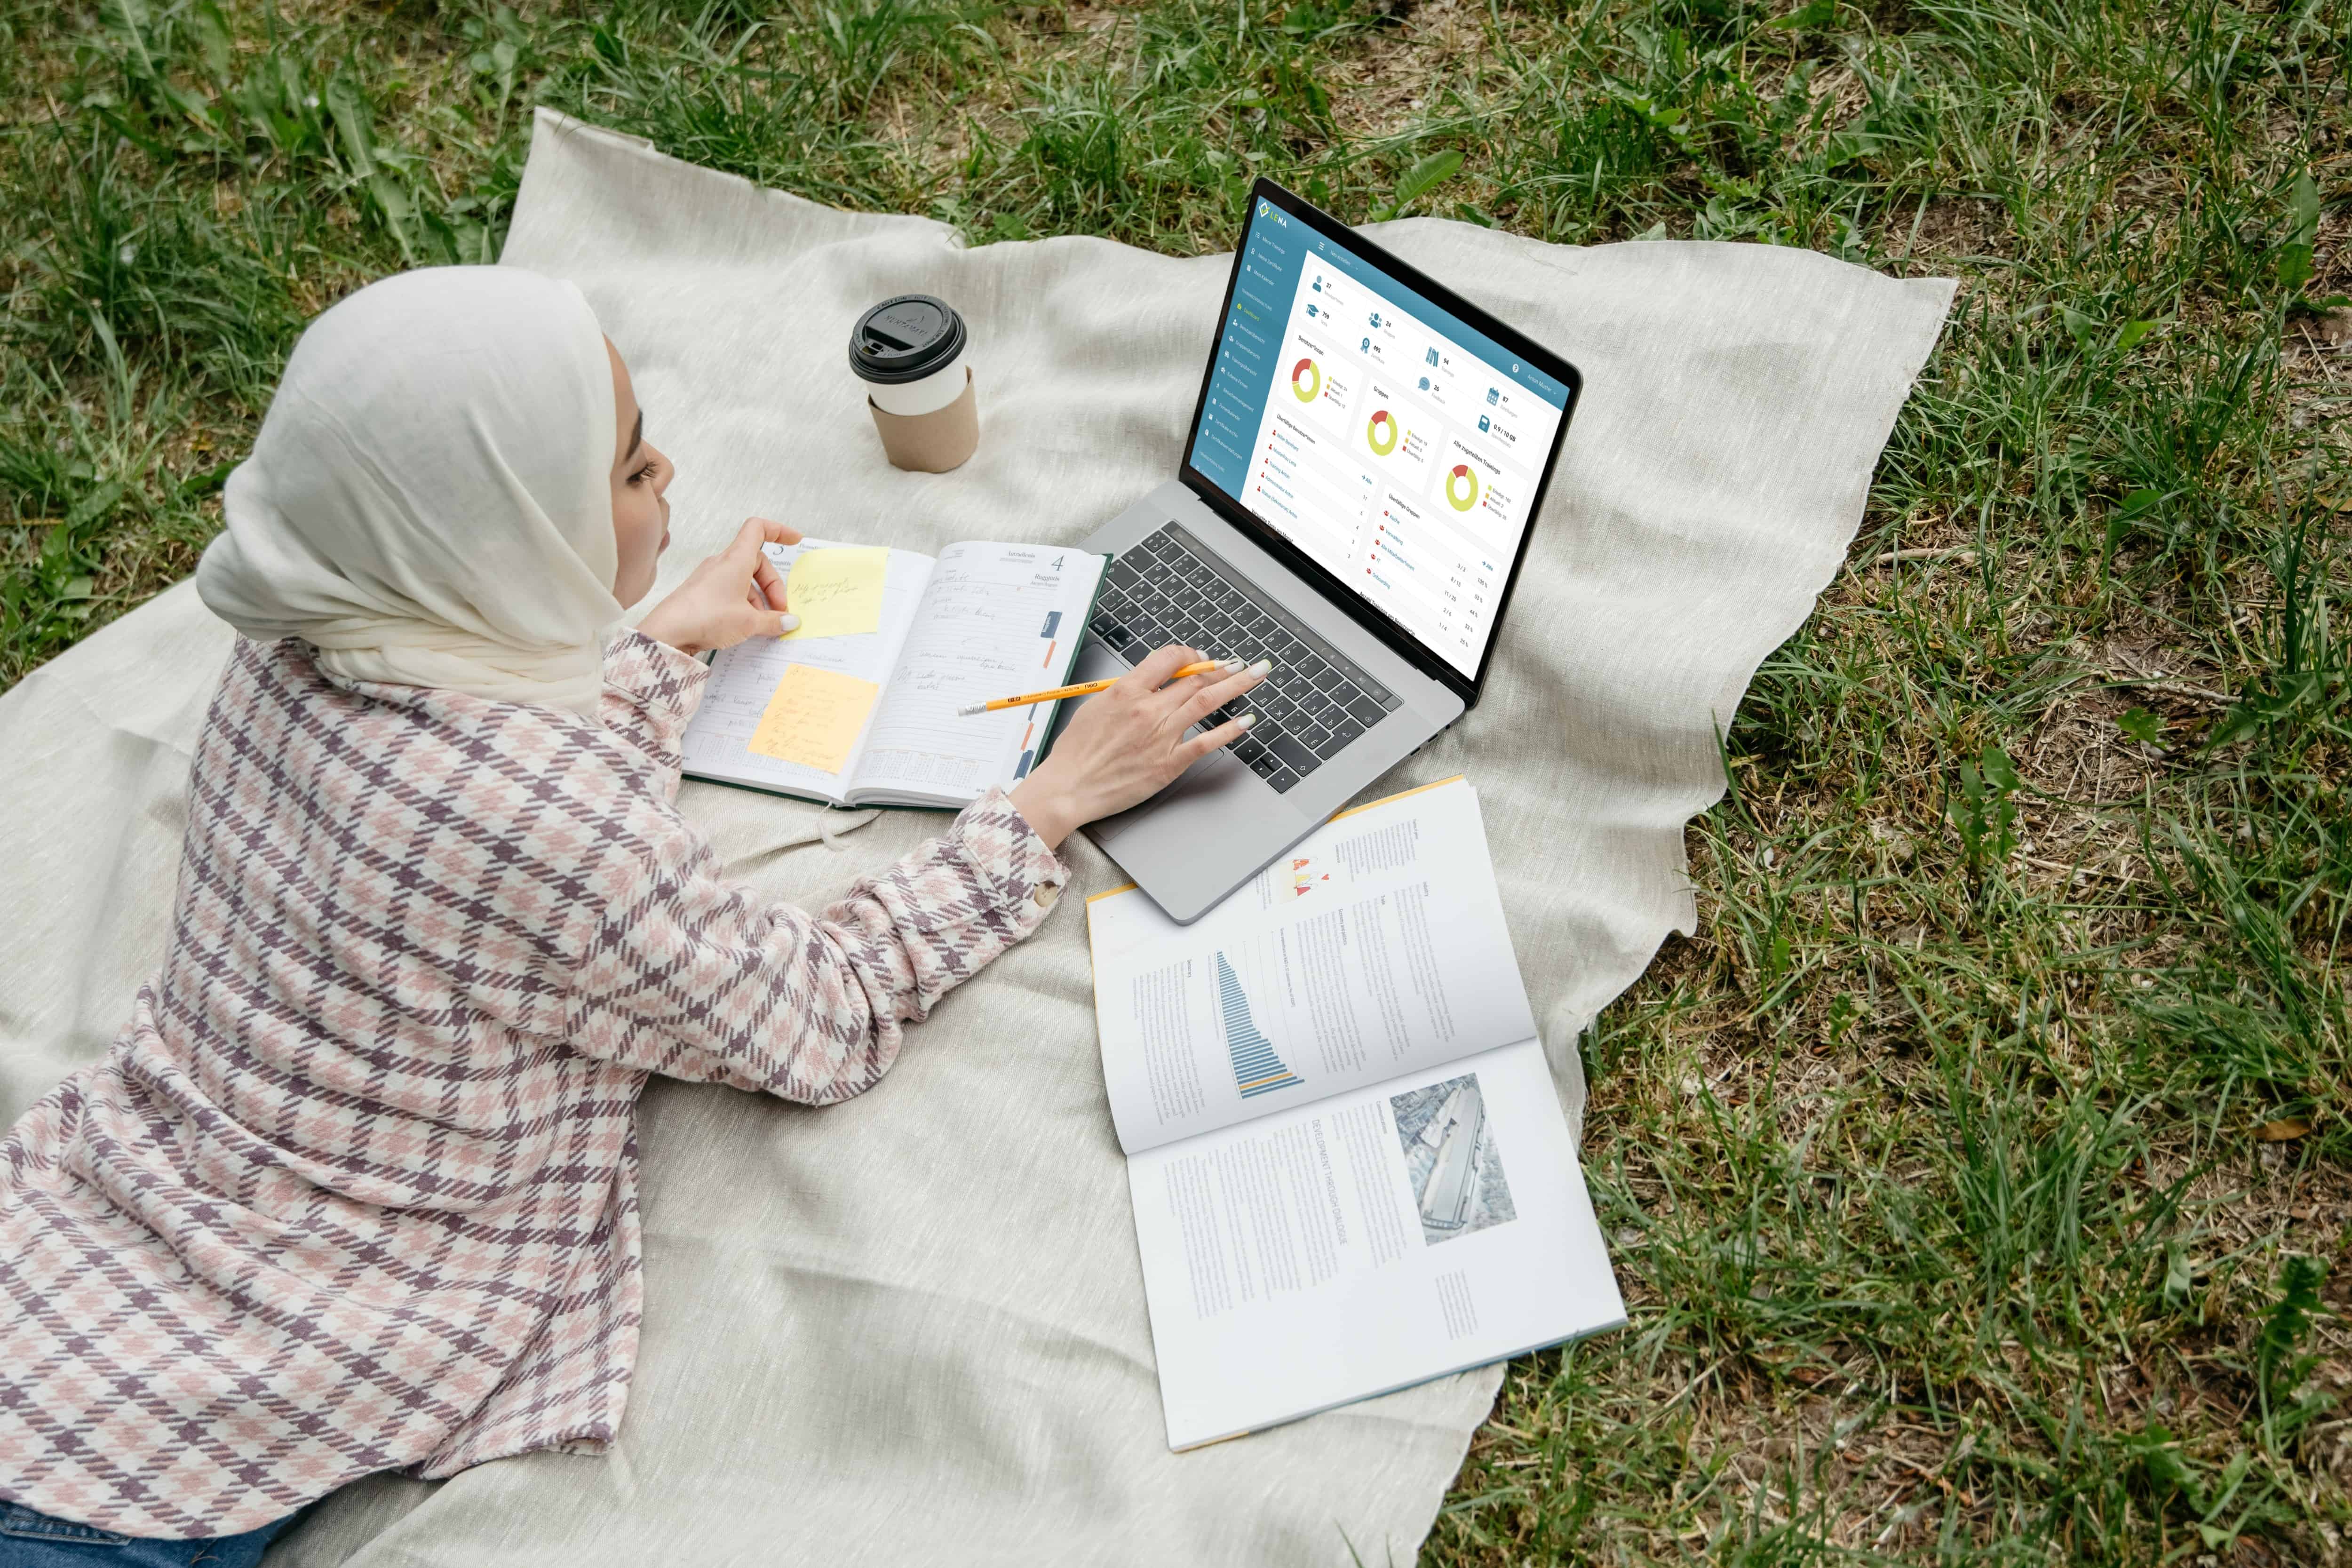 Frau liegt mit ihrem Laptop und Schulungsunterlagen auf einer Wiese und macht eine Online Schulung